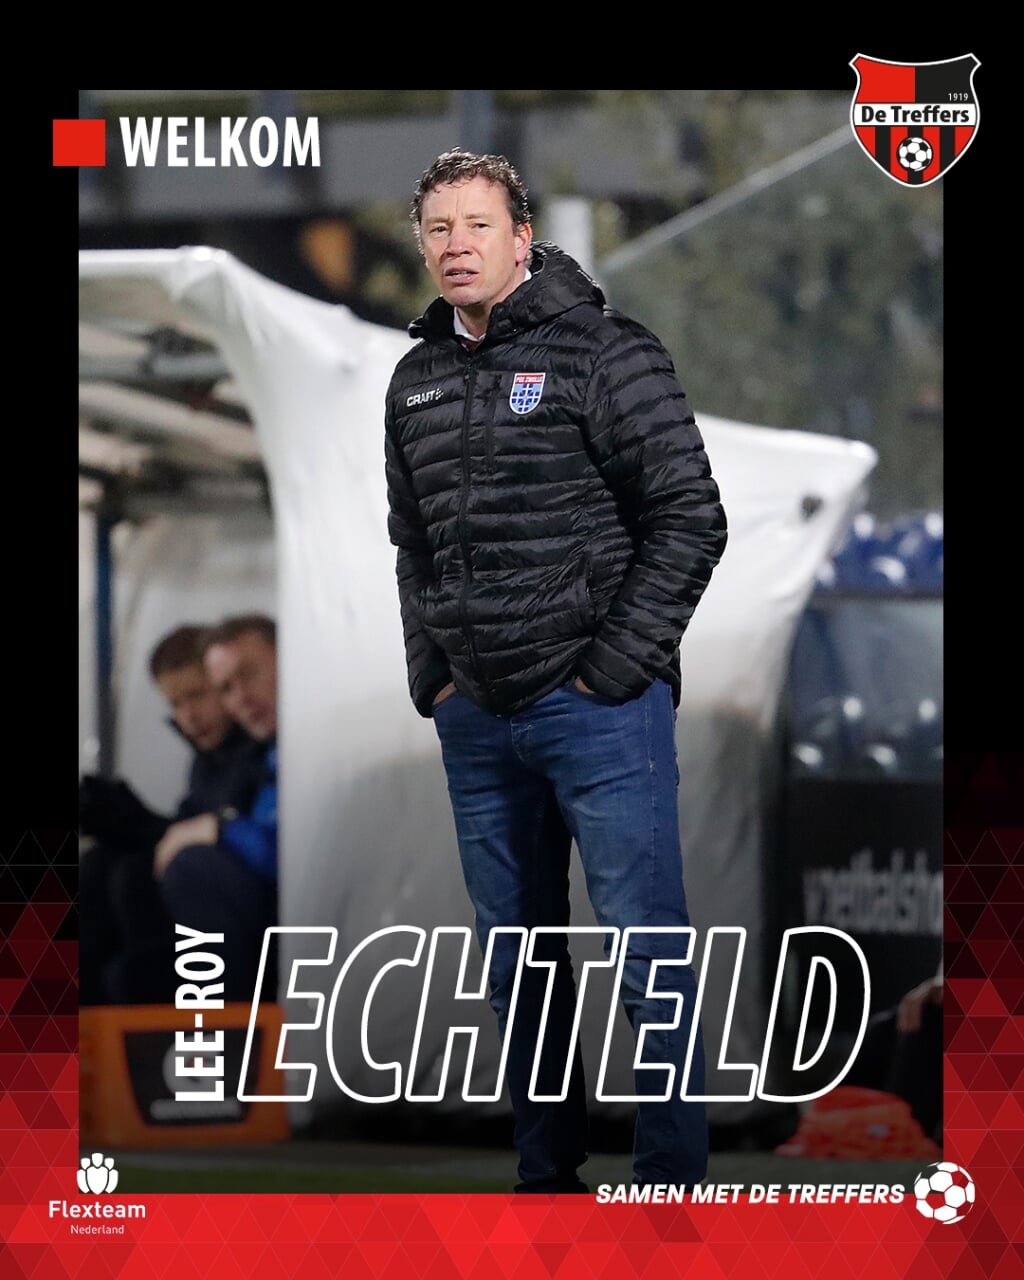 Lee-Roy Echteld nieuwe hoofdtrainer van De Treffers